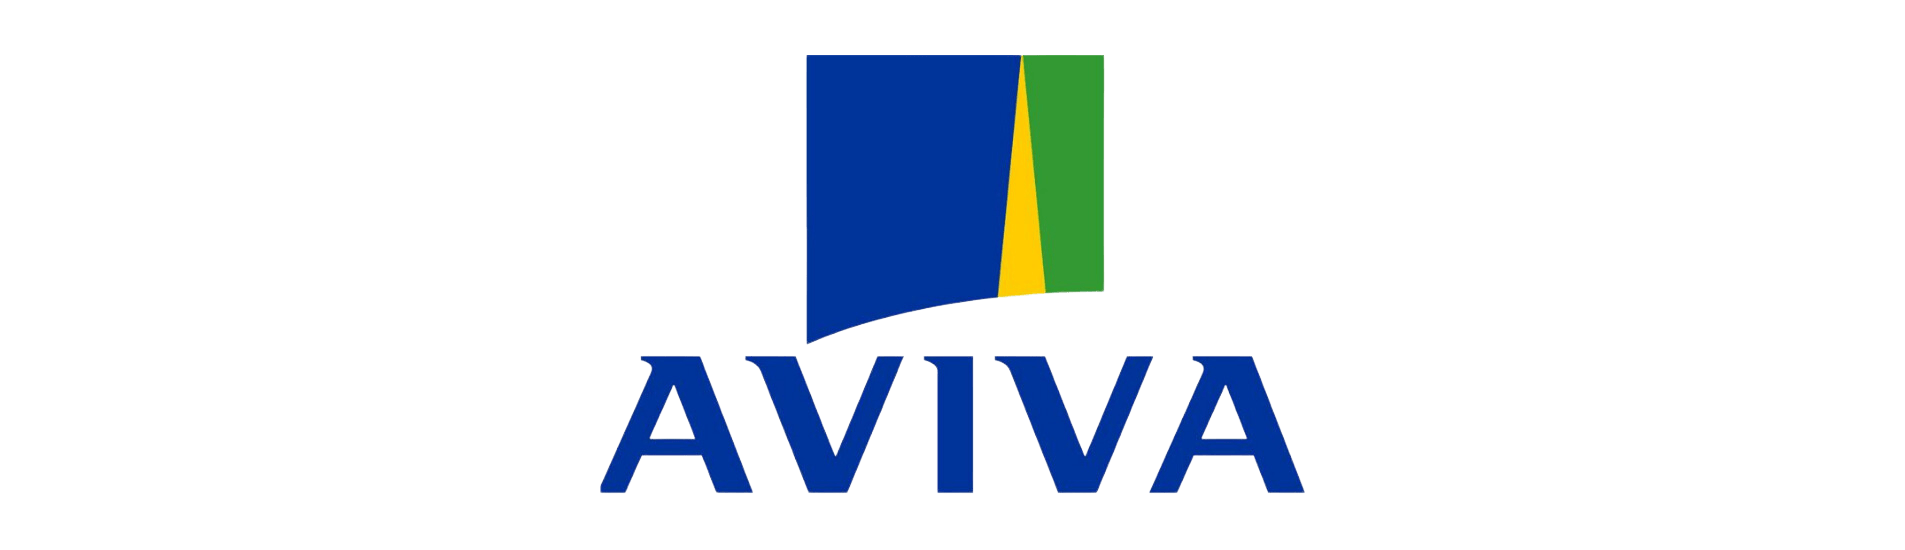 aviva insurance logo